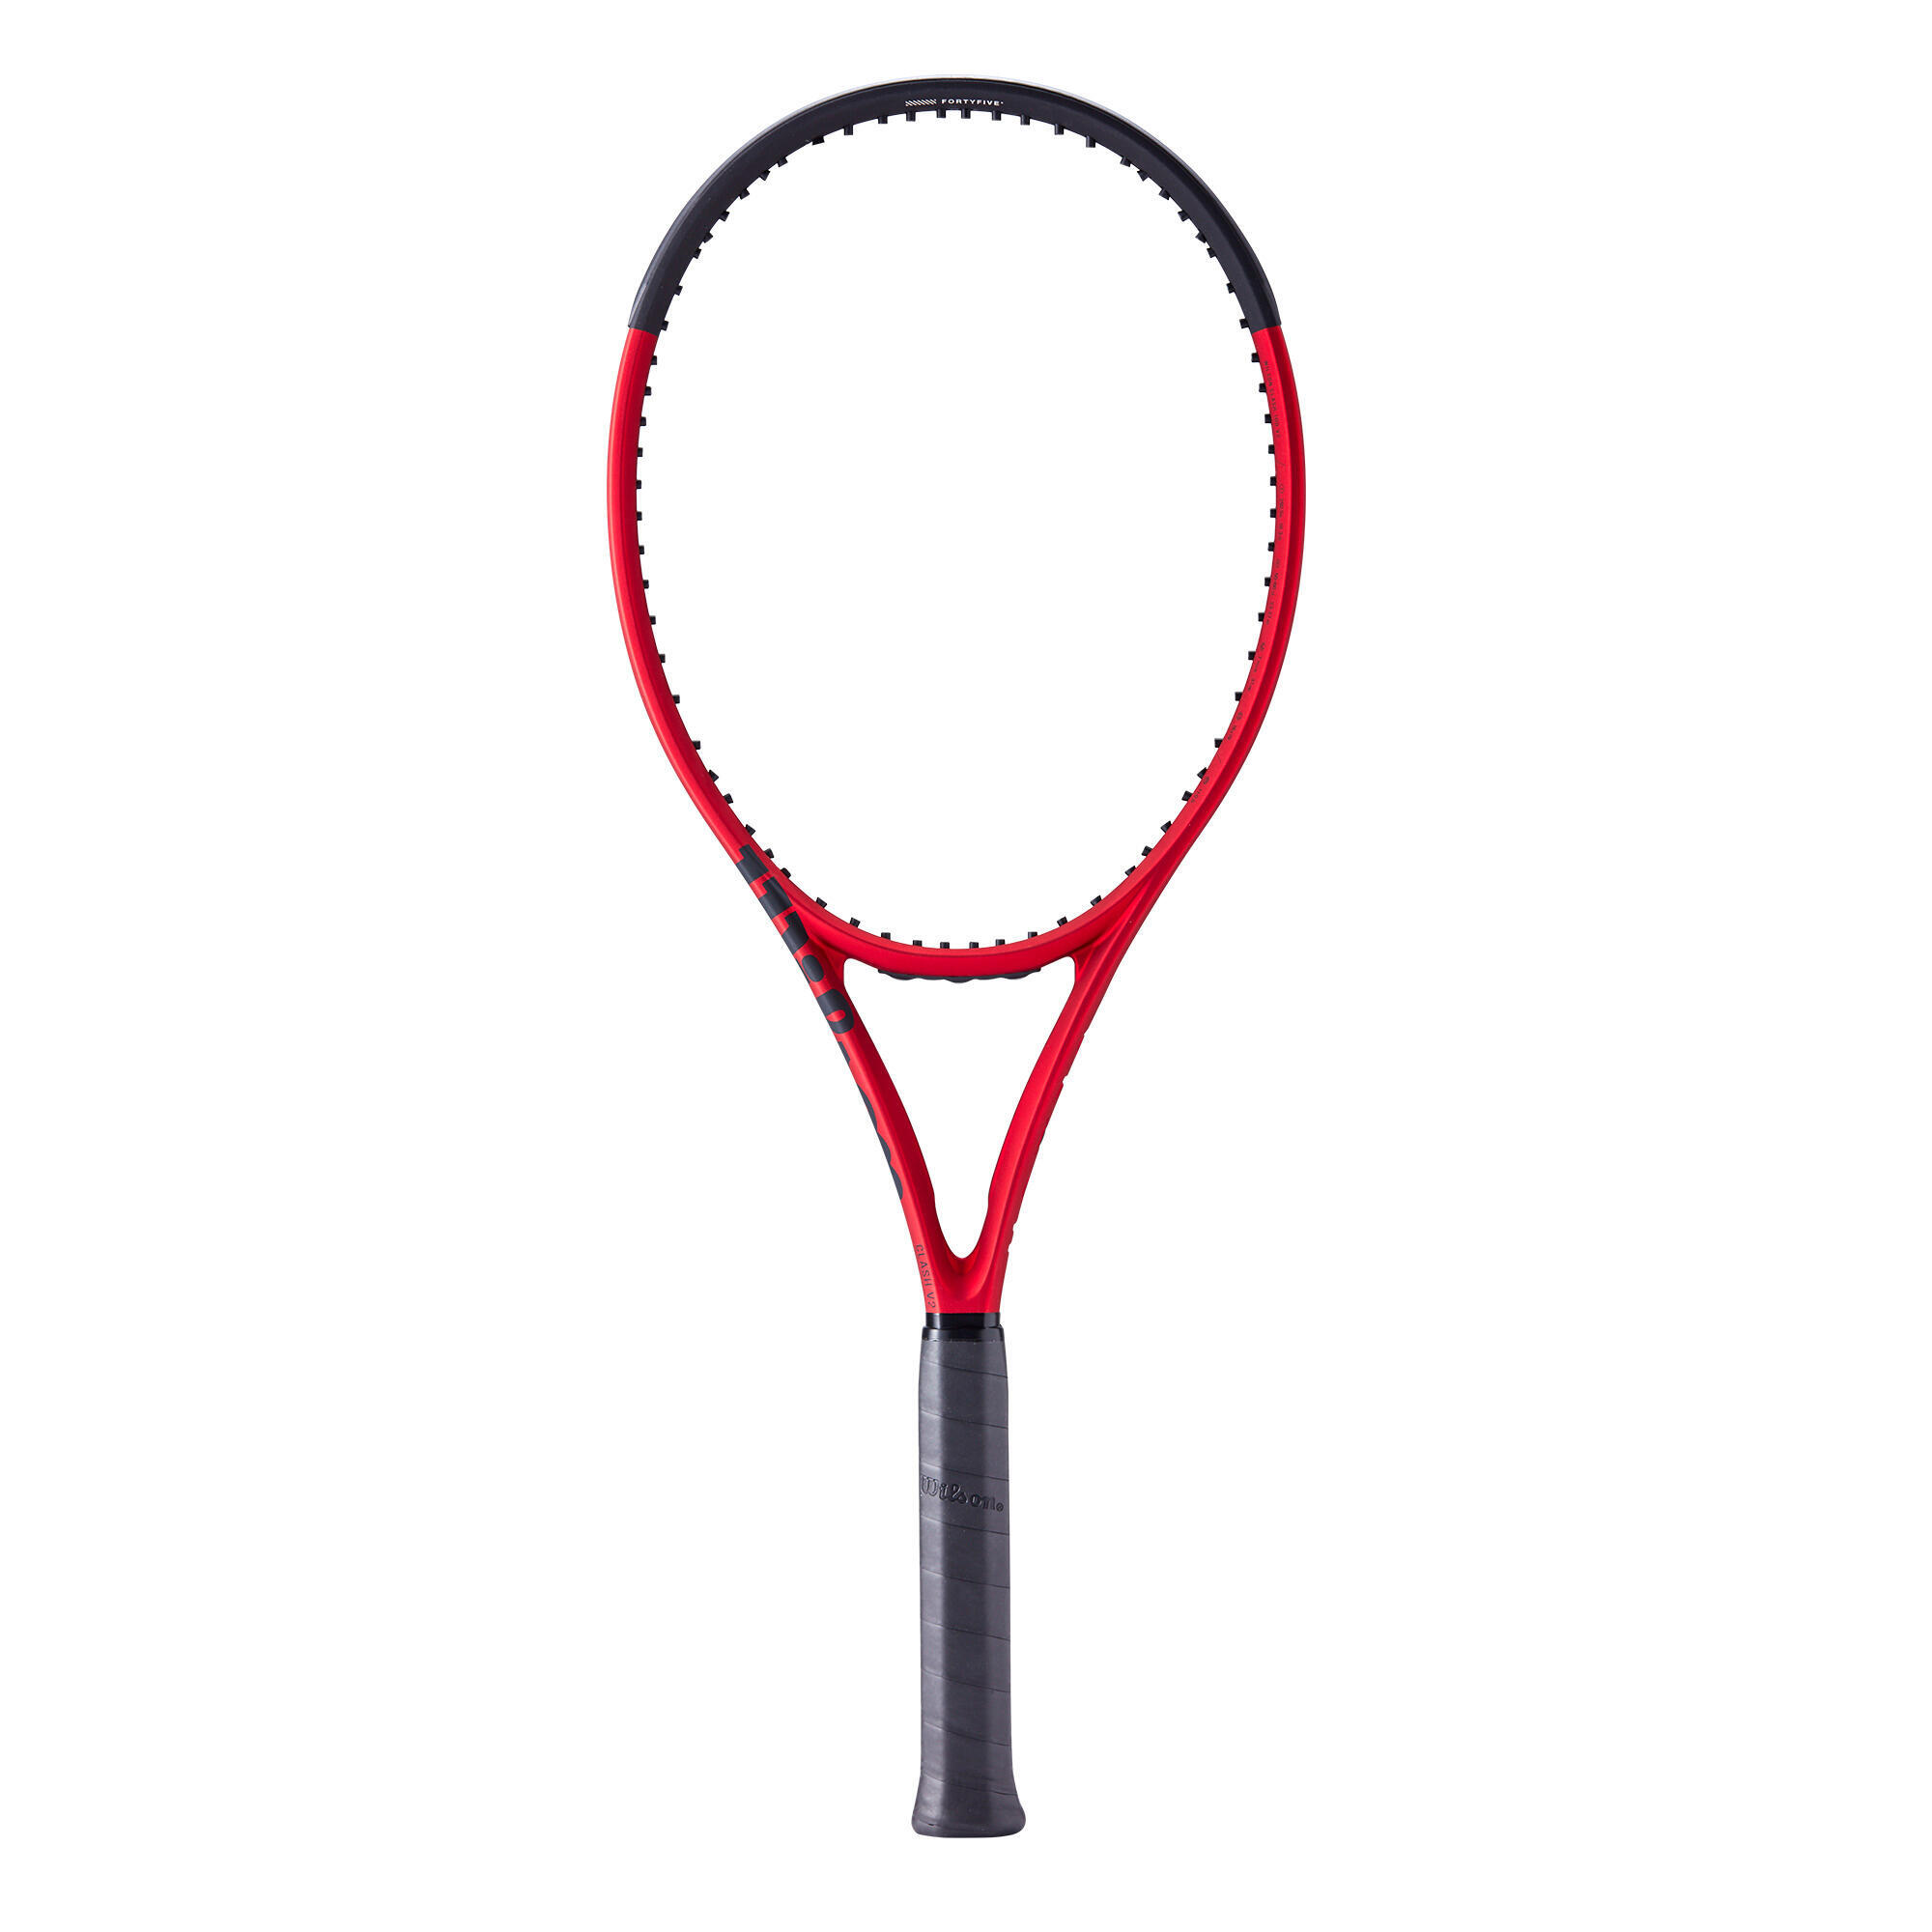 Теннисная ракетка Wilson - Clash 100 V2 черная/красная 295 г, красный черный сумка wilson super tour clash 9r v2 0 красный